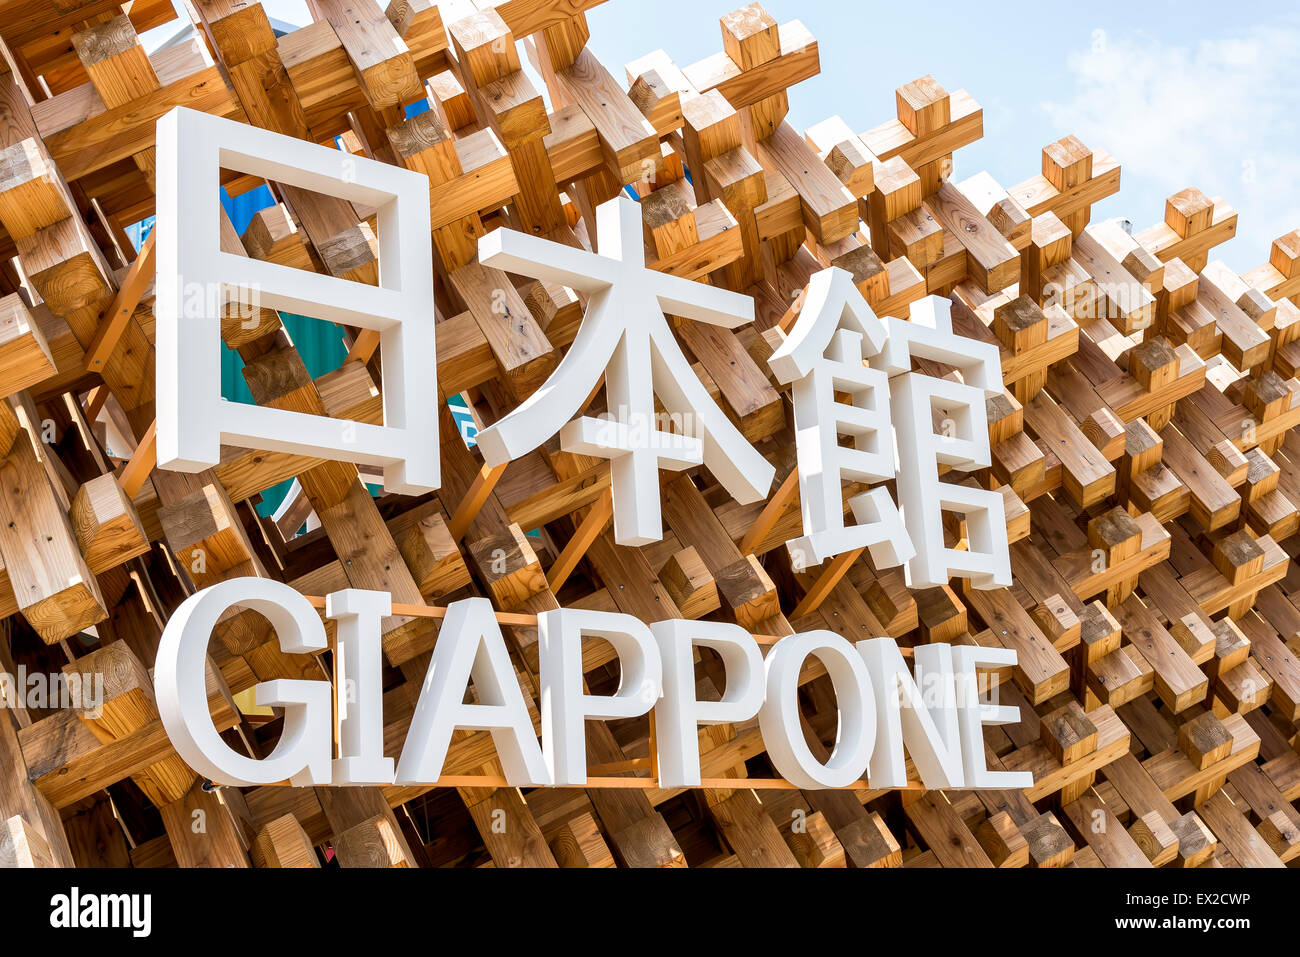 MILAN, ITALIE - Le 6 juin 2015 : le pavillon du Japon à Expo 2015, entrée de l'exposition universelle sur le thème de la nourriture - Nourrir la planète Banque D'Images